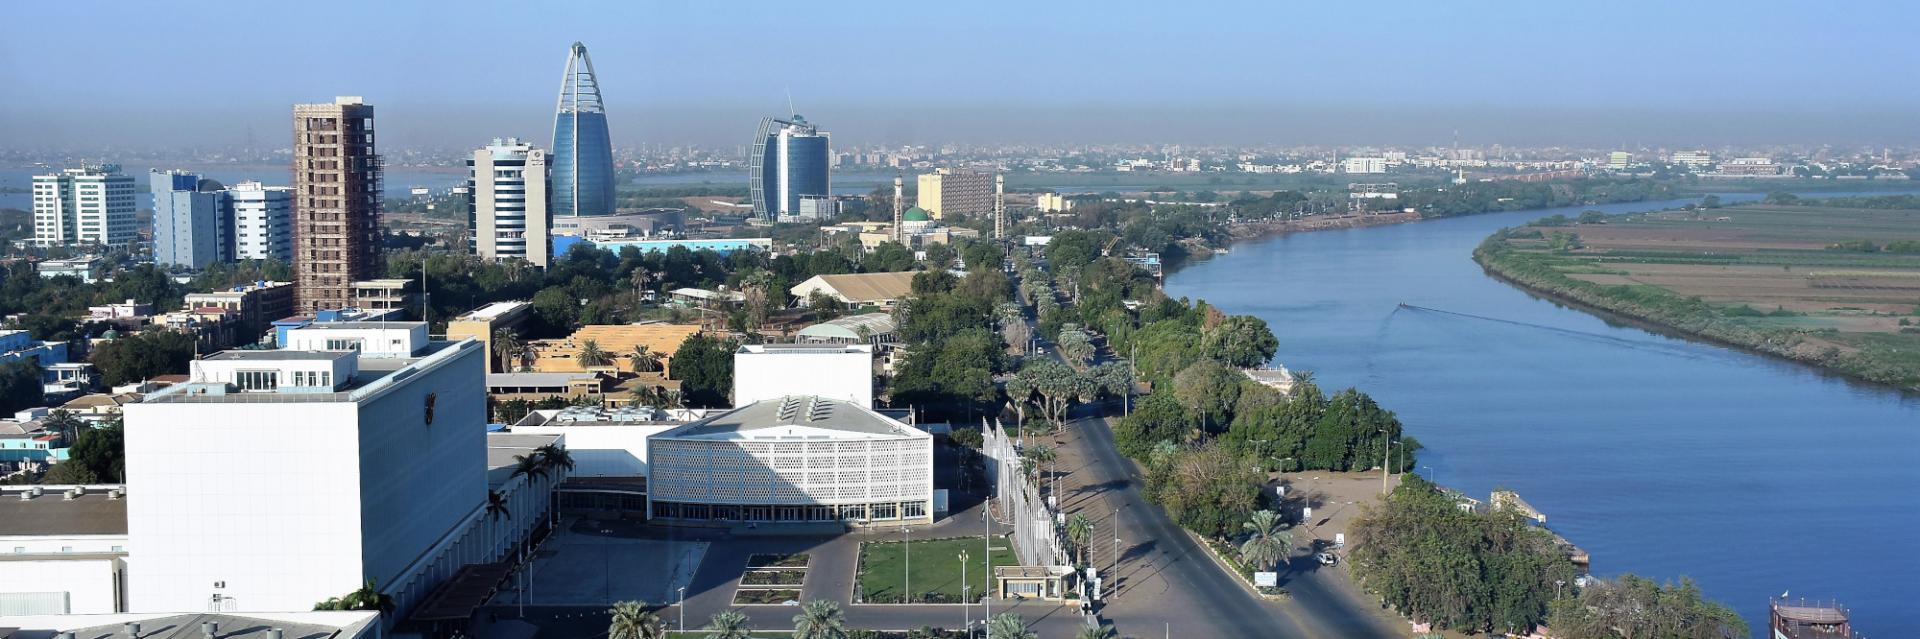 ZLECAf: le Soudan examine le potentiel des chaînes de valeurs régionales au service de la reprise économique 